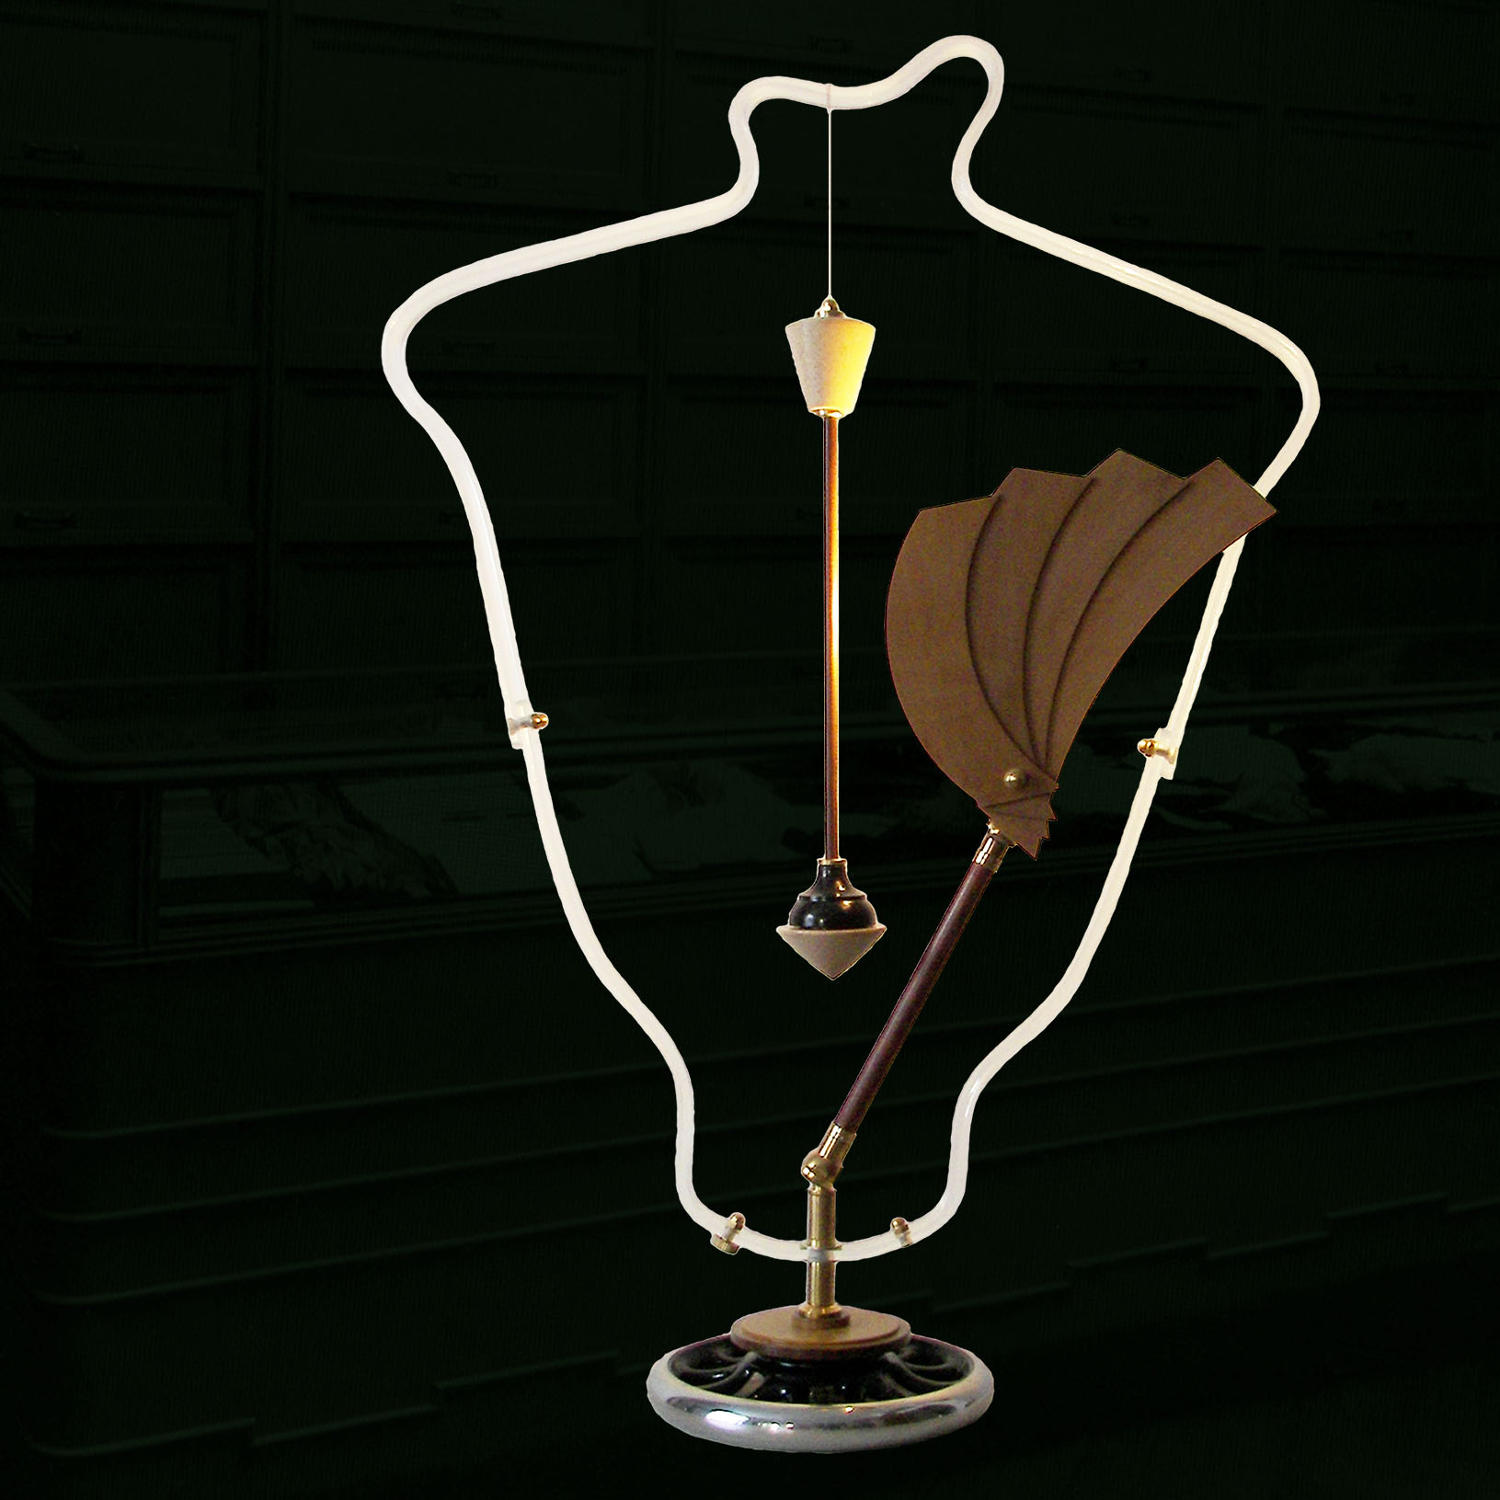 Unique sculptural lamp - Panache - by Gilles Bourlet Dartmouth